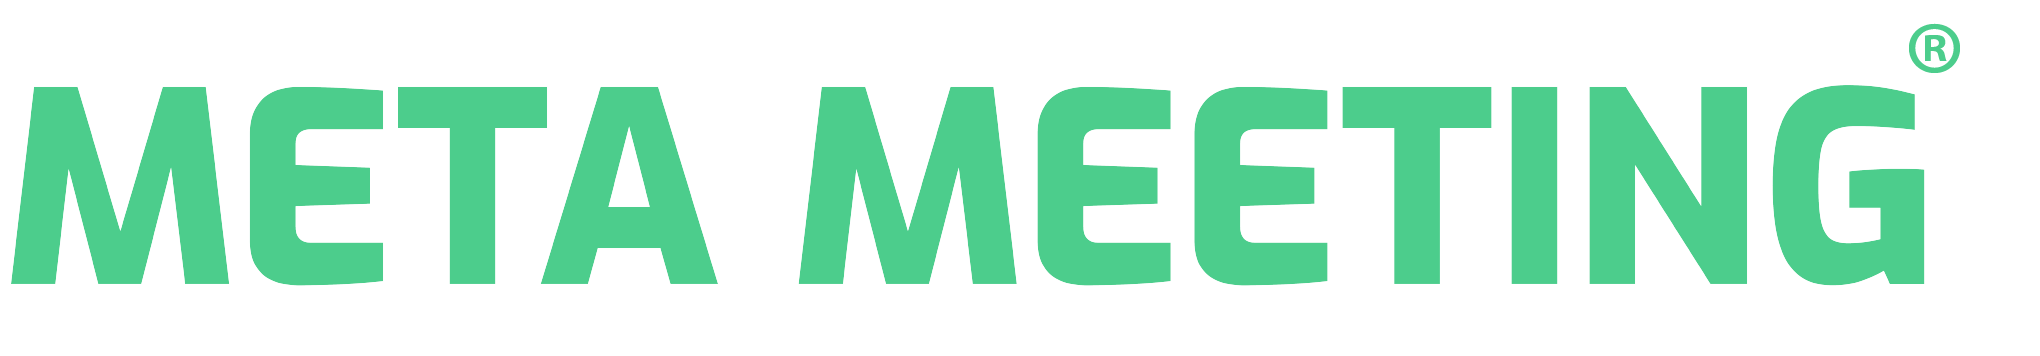 meta-meeting-metaverso-logo